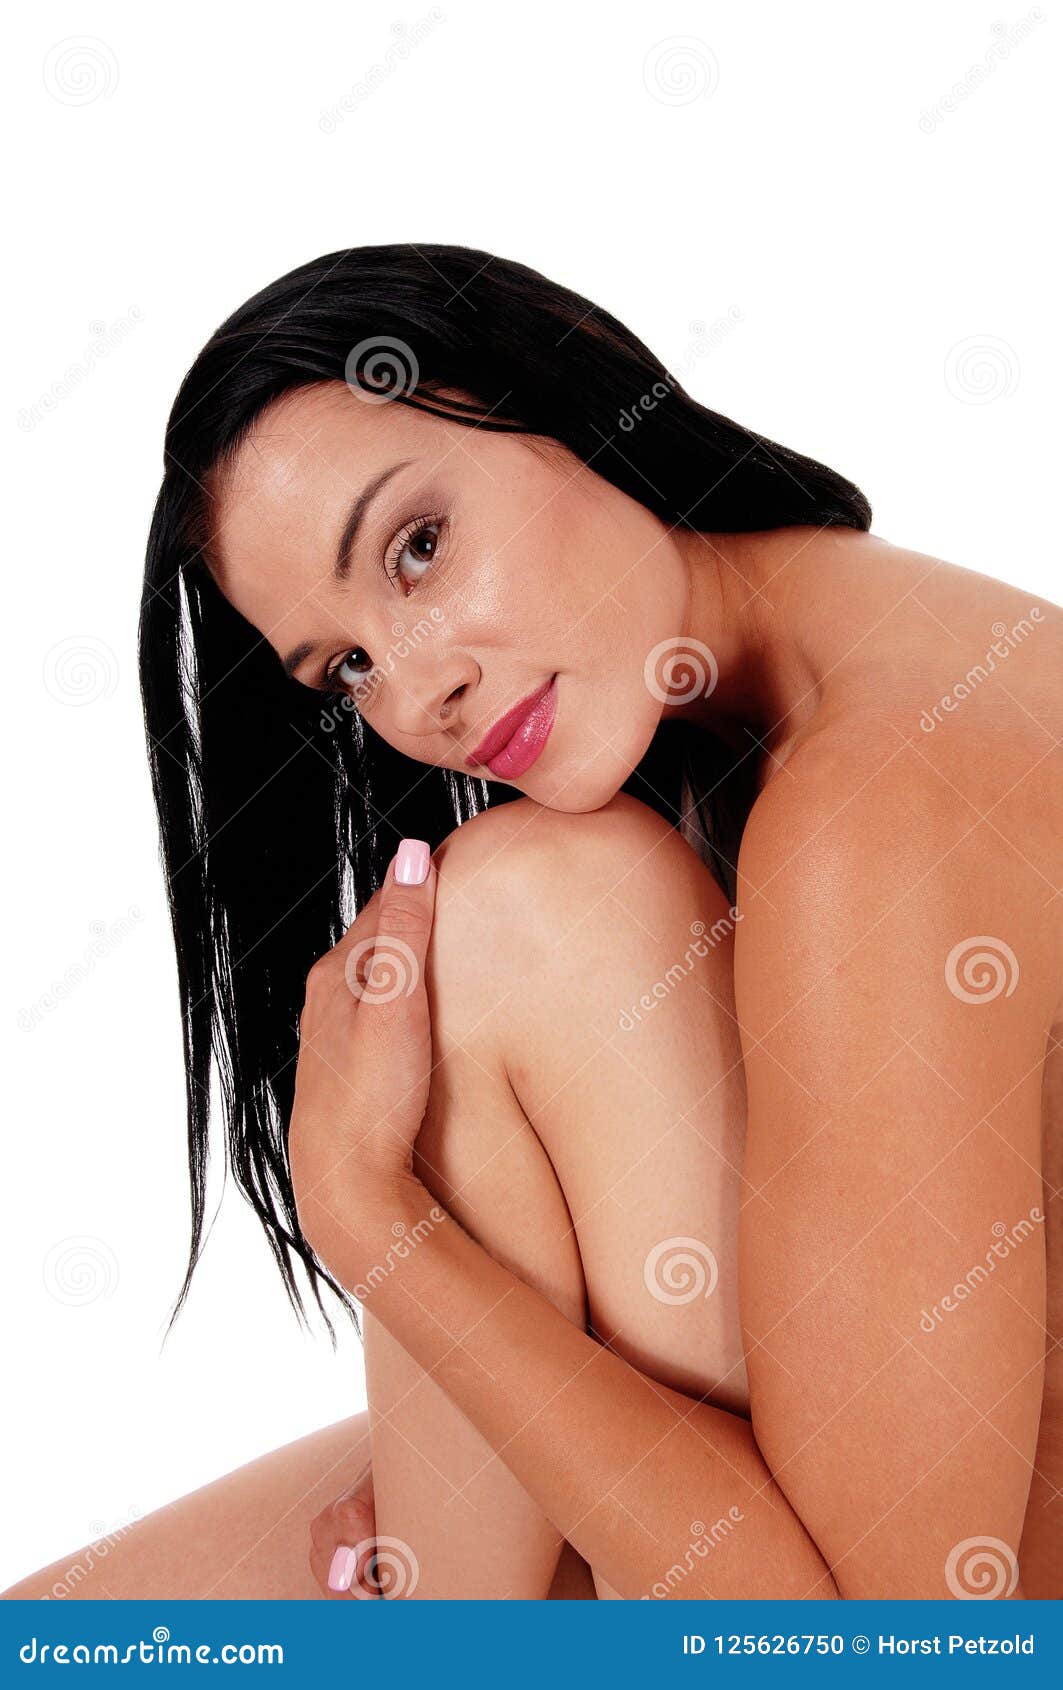 naked black hair girl naked photo